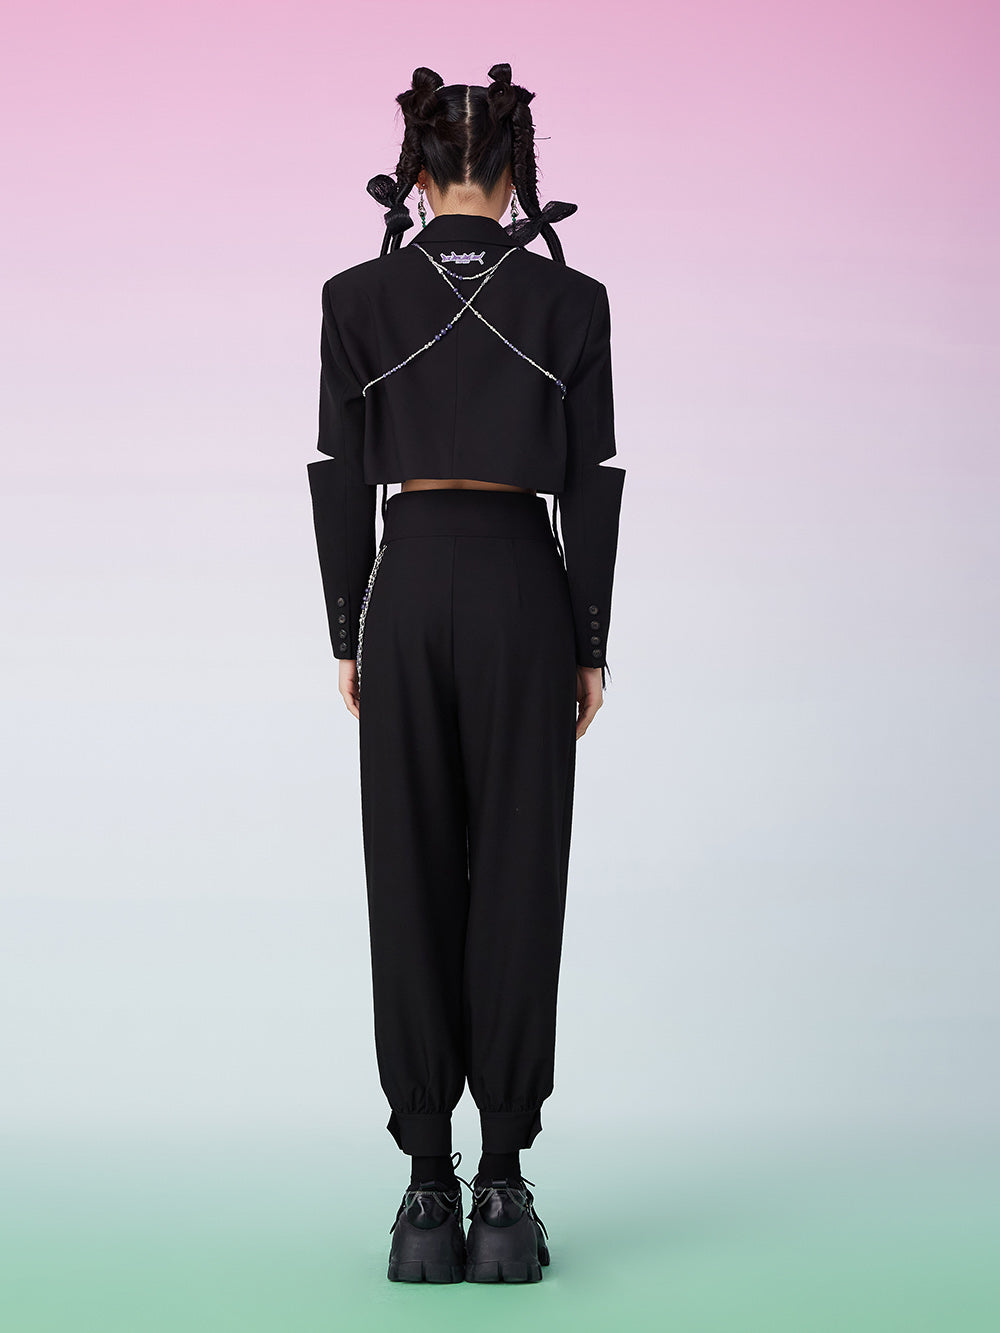 MUKZIN Cut Out Black Short Suit Coat With Chain Decoration